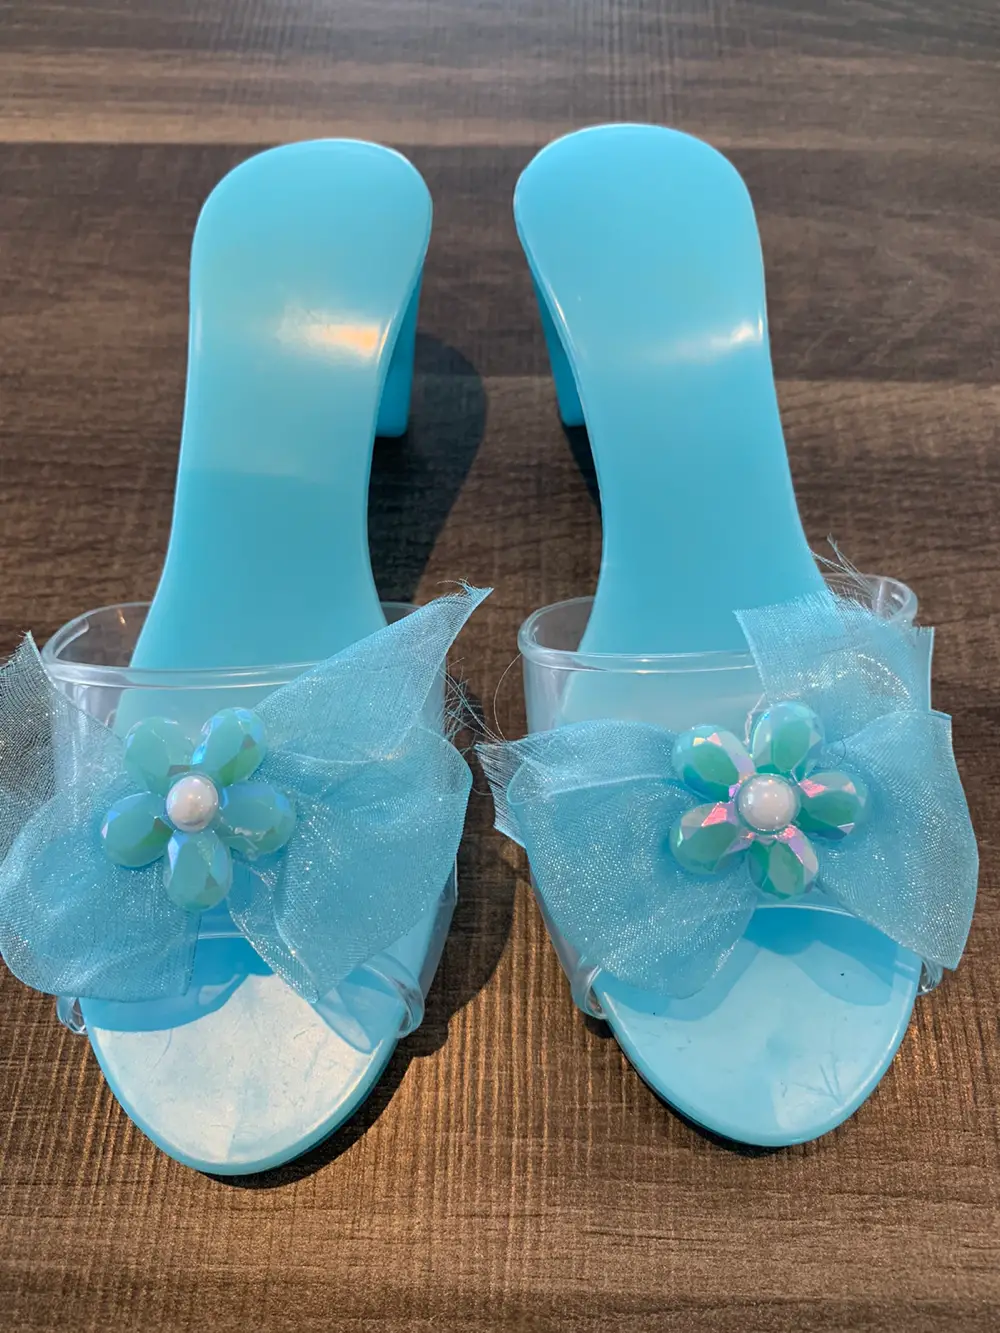 Køb Fætter BR Prinsesse sko i 25 af Mette på Reshopper · Shop secondhand til børn, mor og bolig